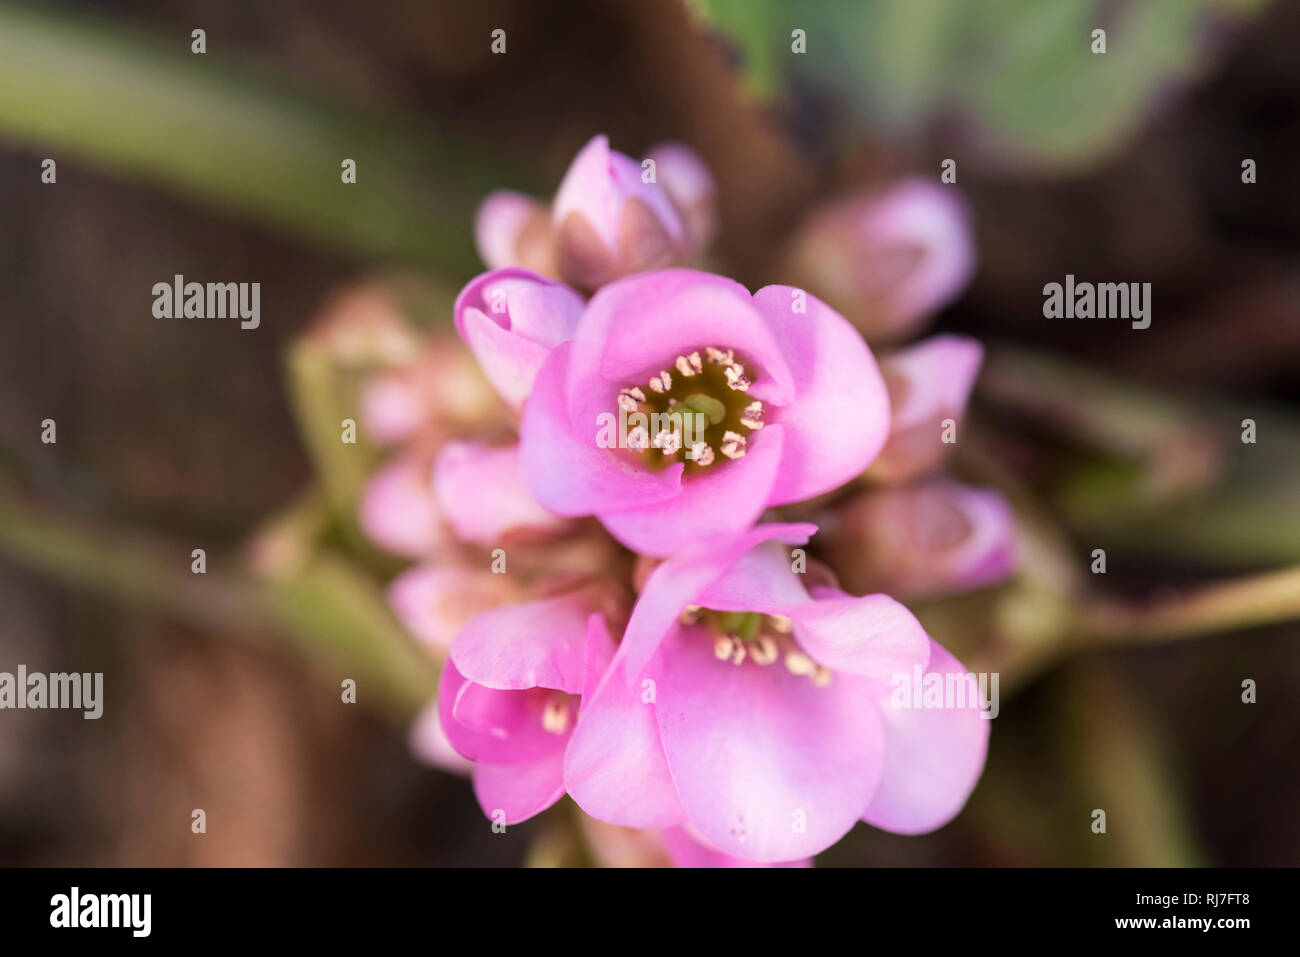 Frühblüher in der Natur, Zierrhabarber Blüten, close-up Stock Photo